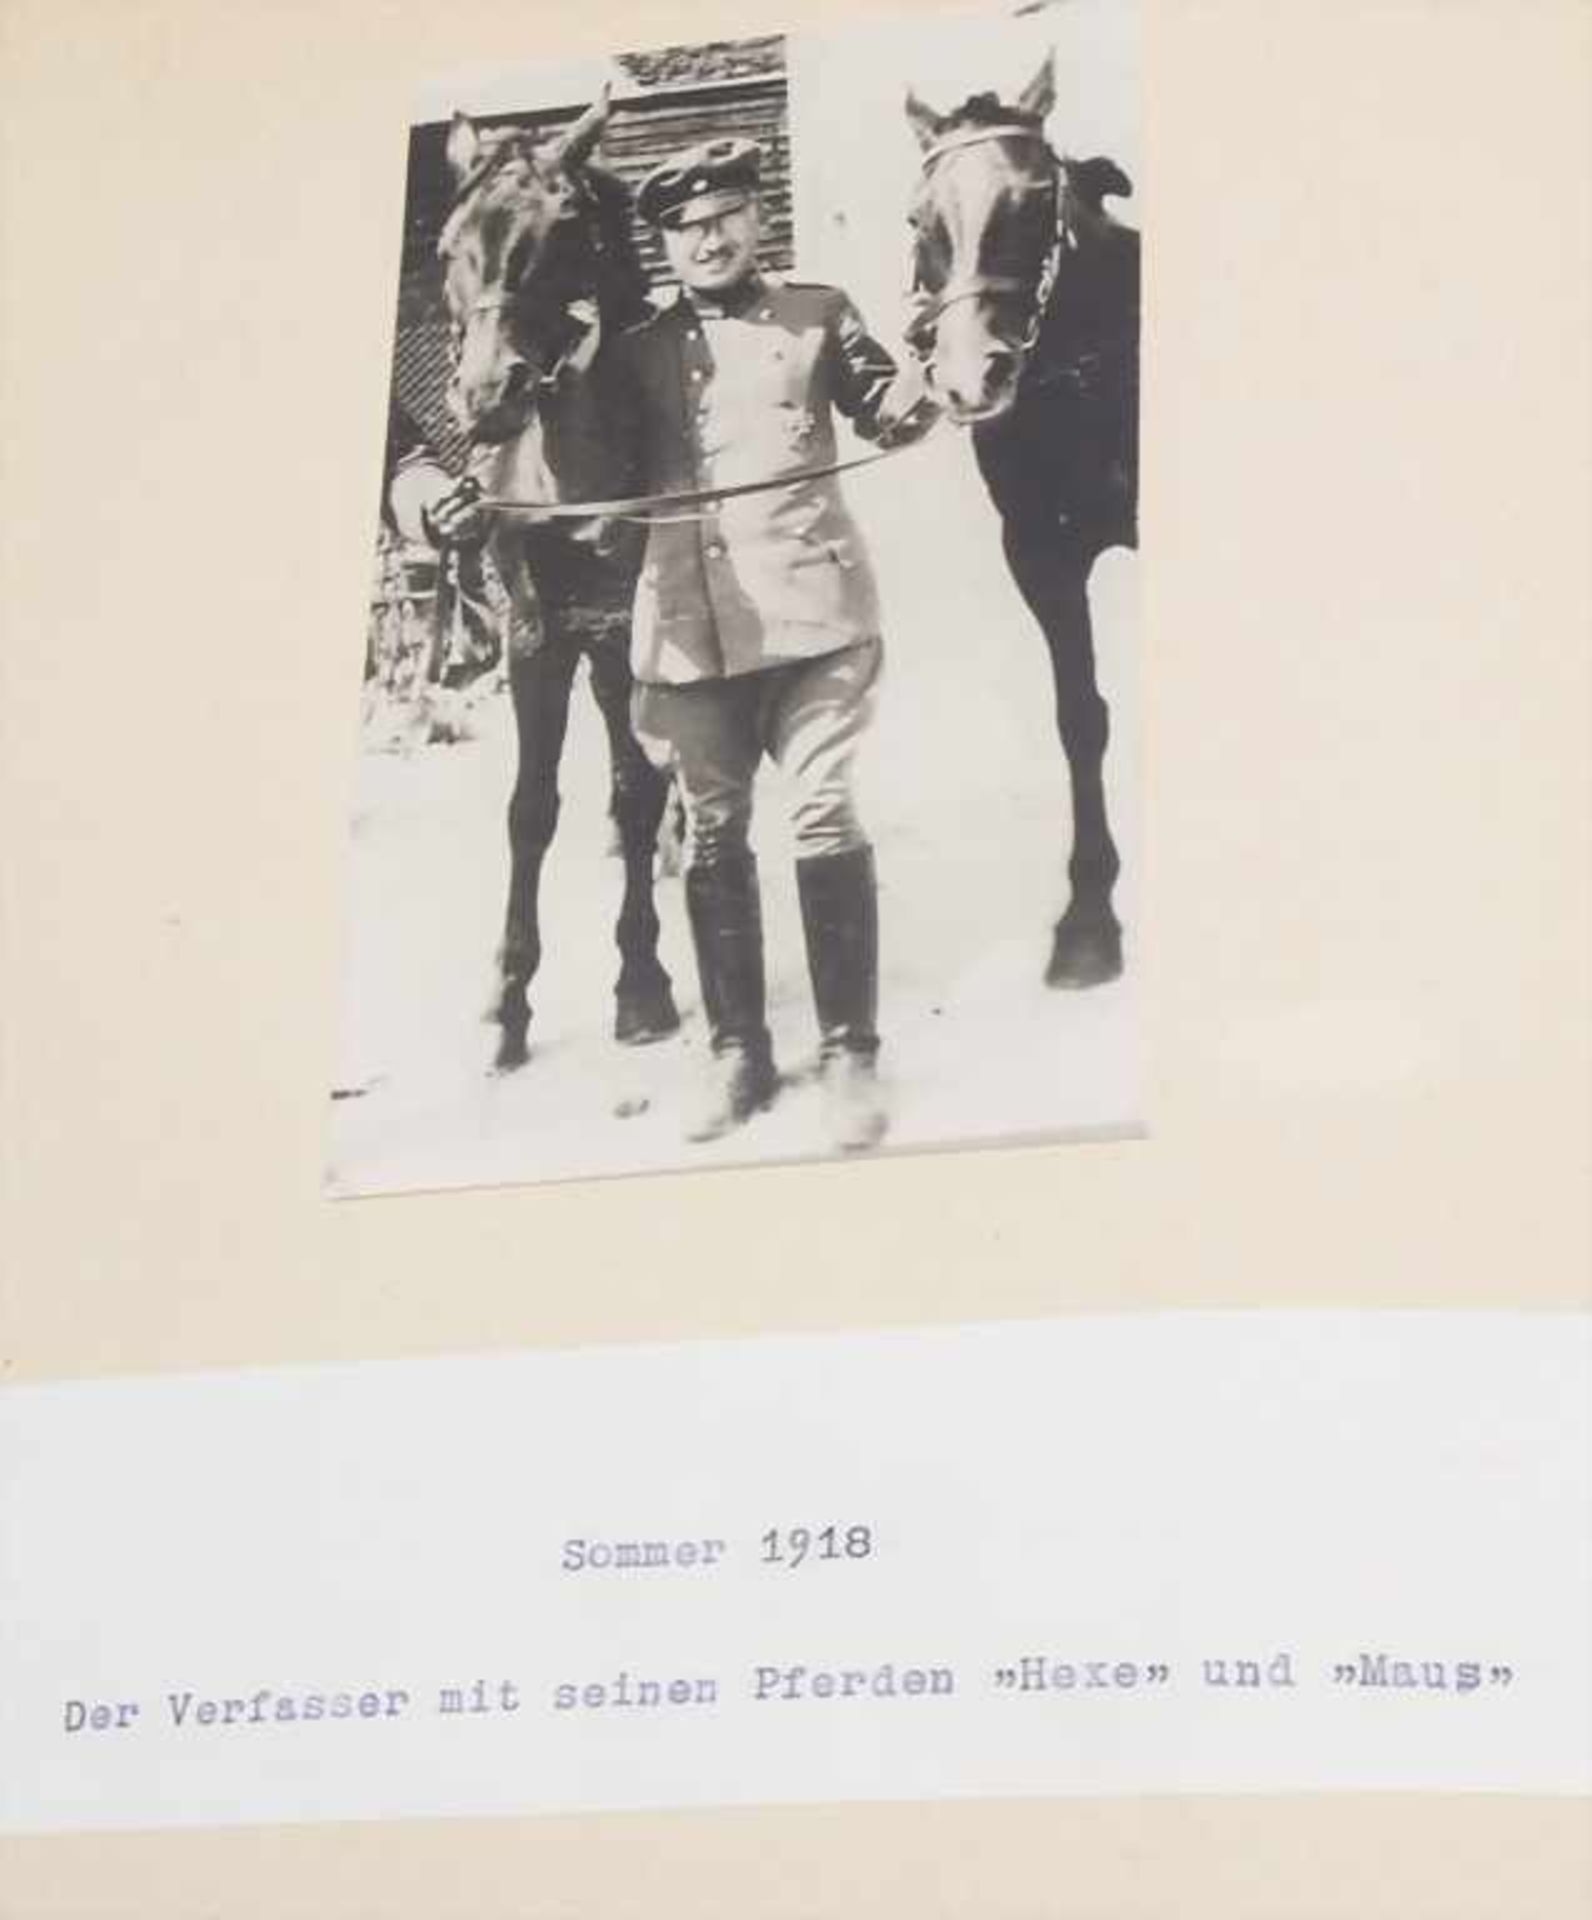 Ottmar Lucius: Munuskript '1915 - 1918 bei der schweren Artellerie' / A manuscript 'war report